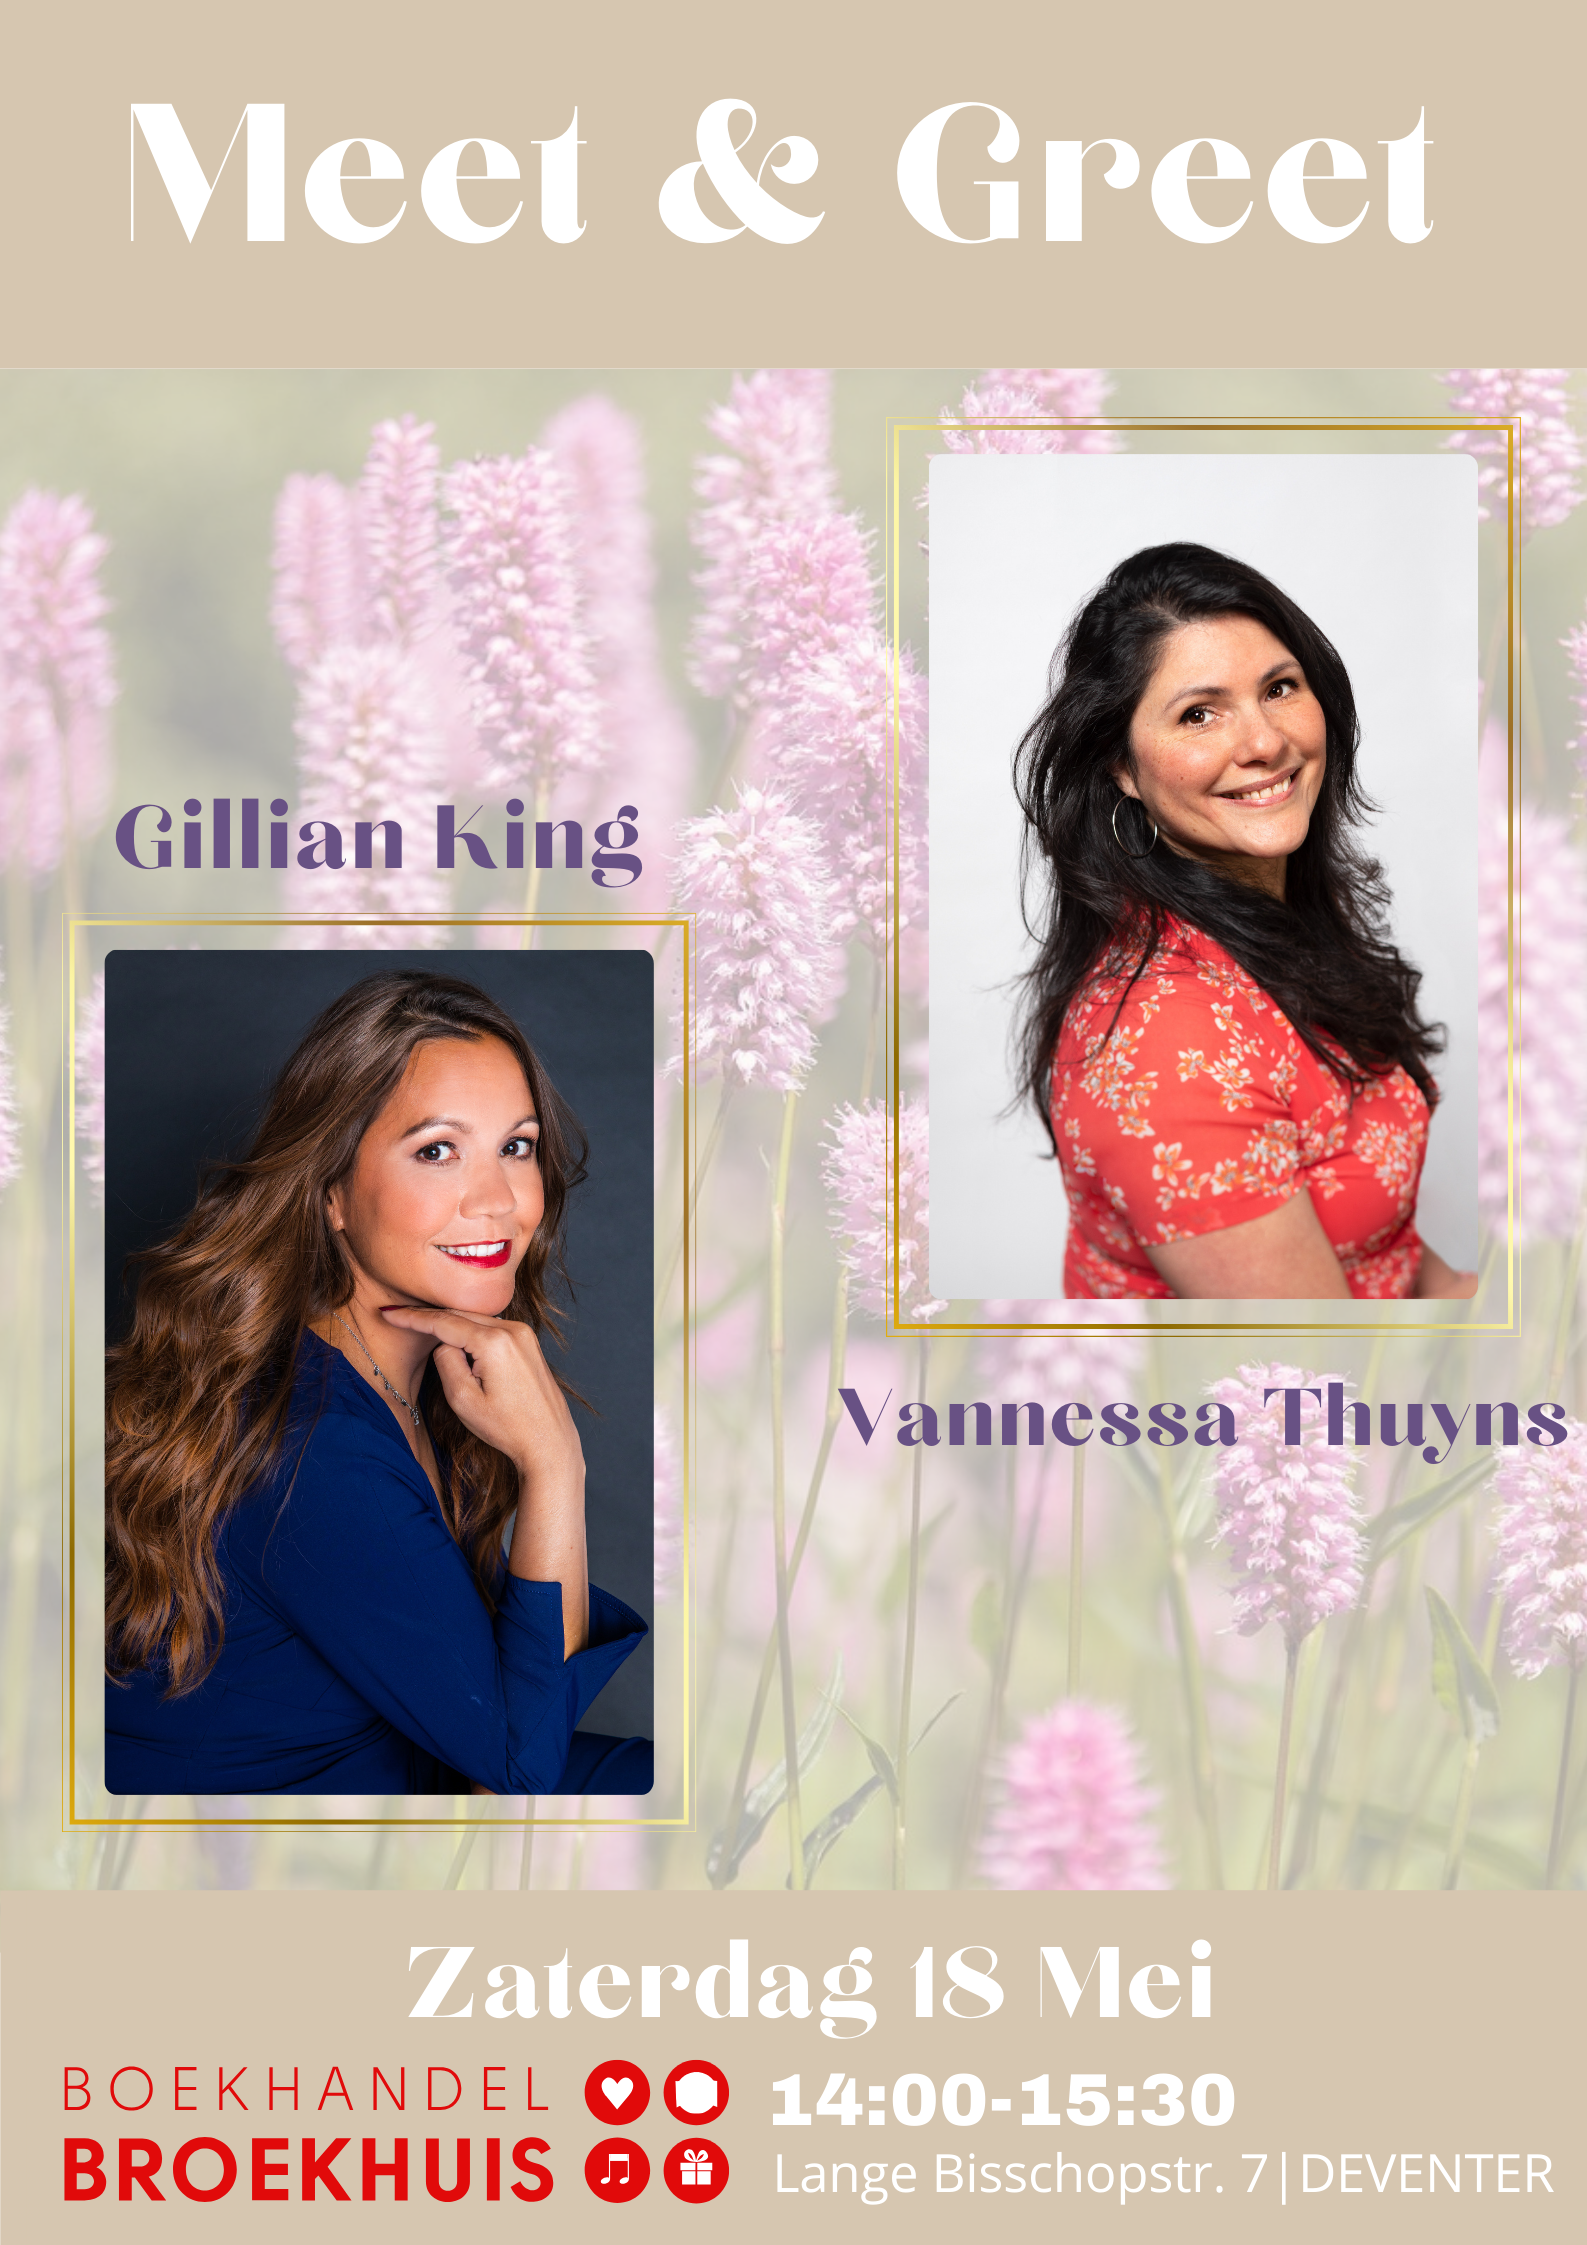 Meet & Greet met Gillian King & Vannessa Thuyns op zaterdag 18 mei te Deventer